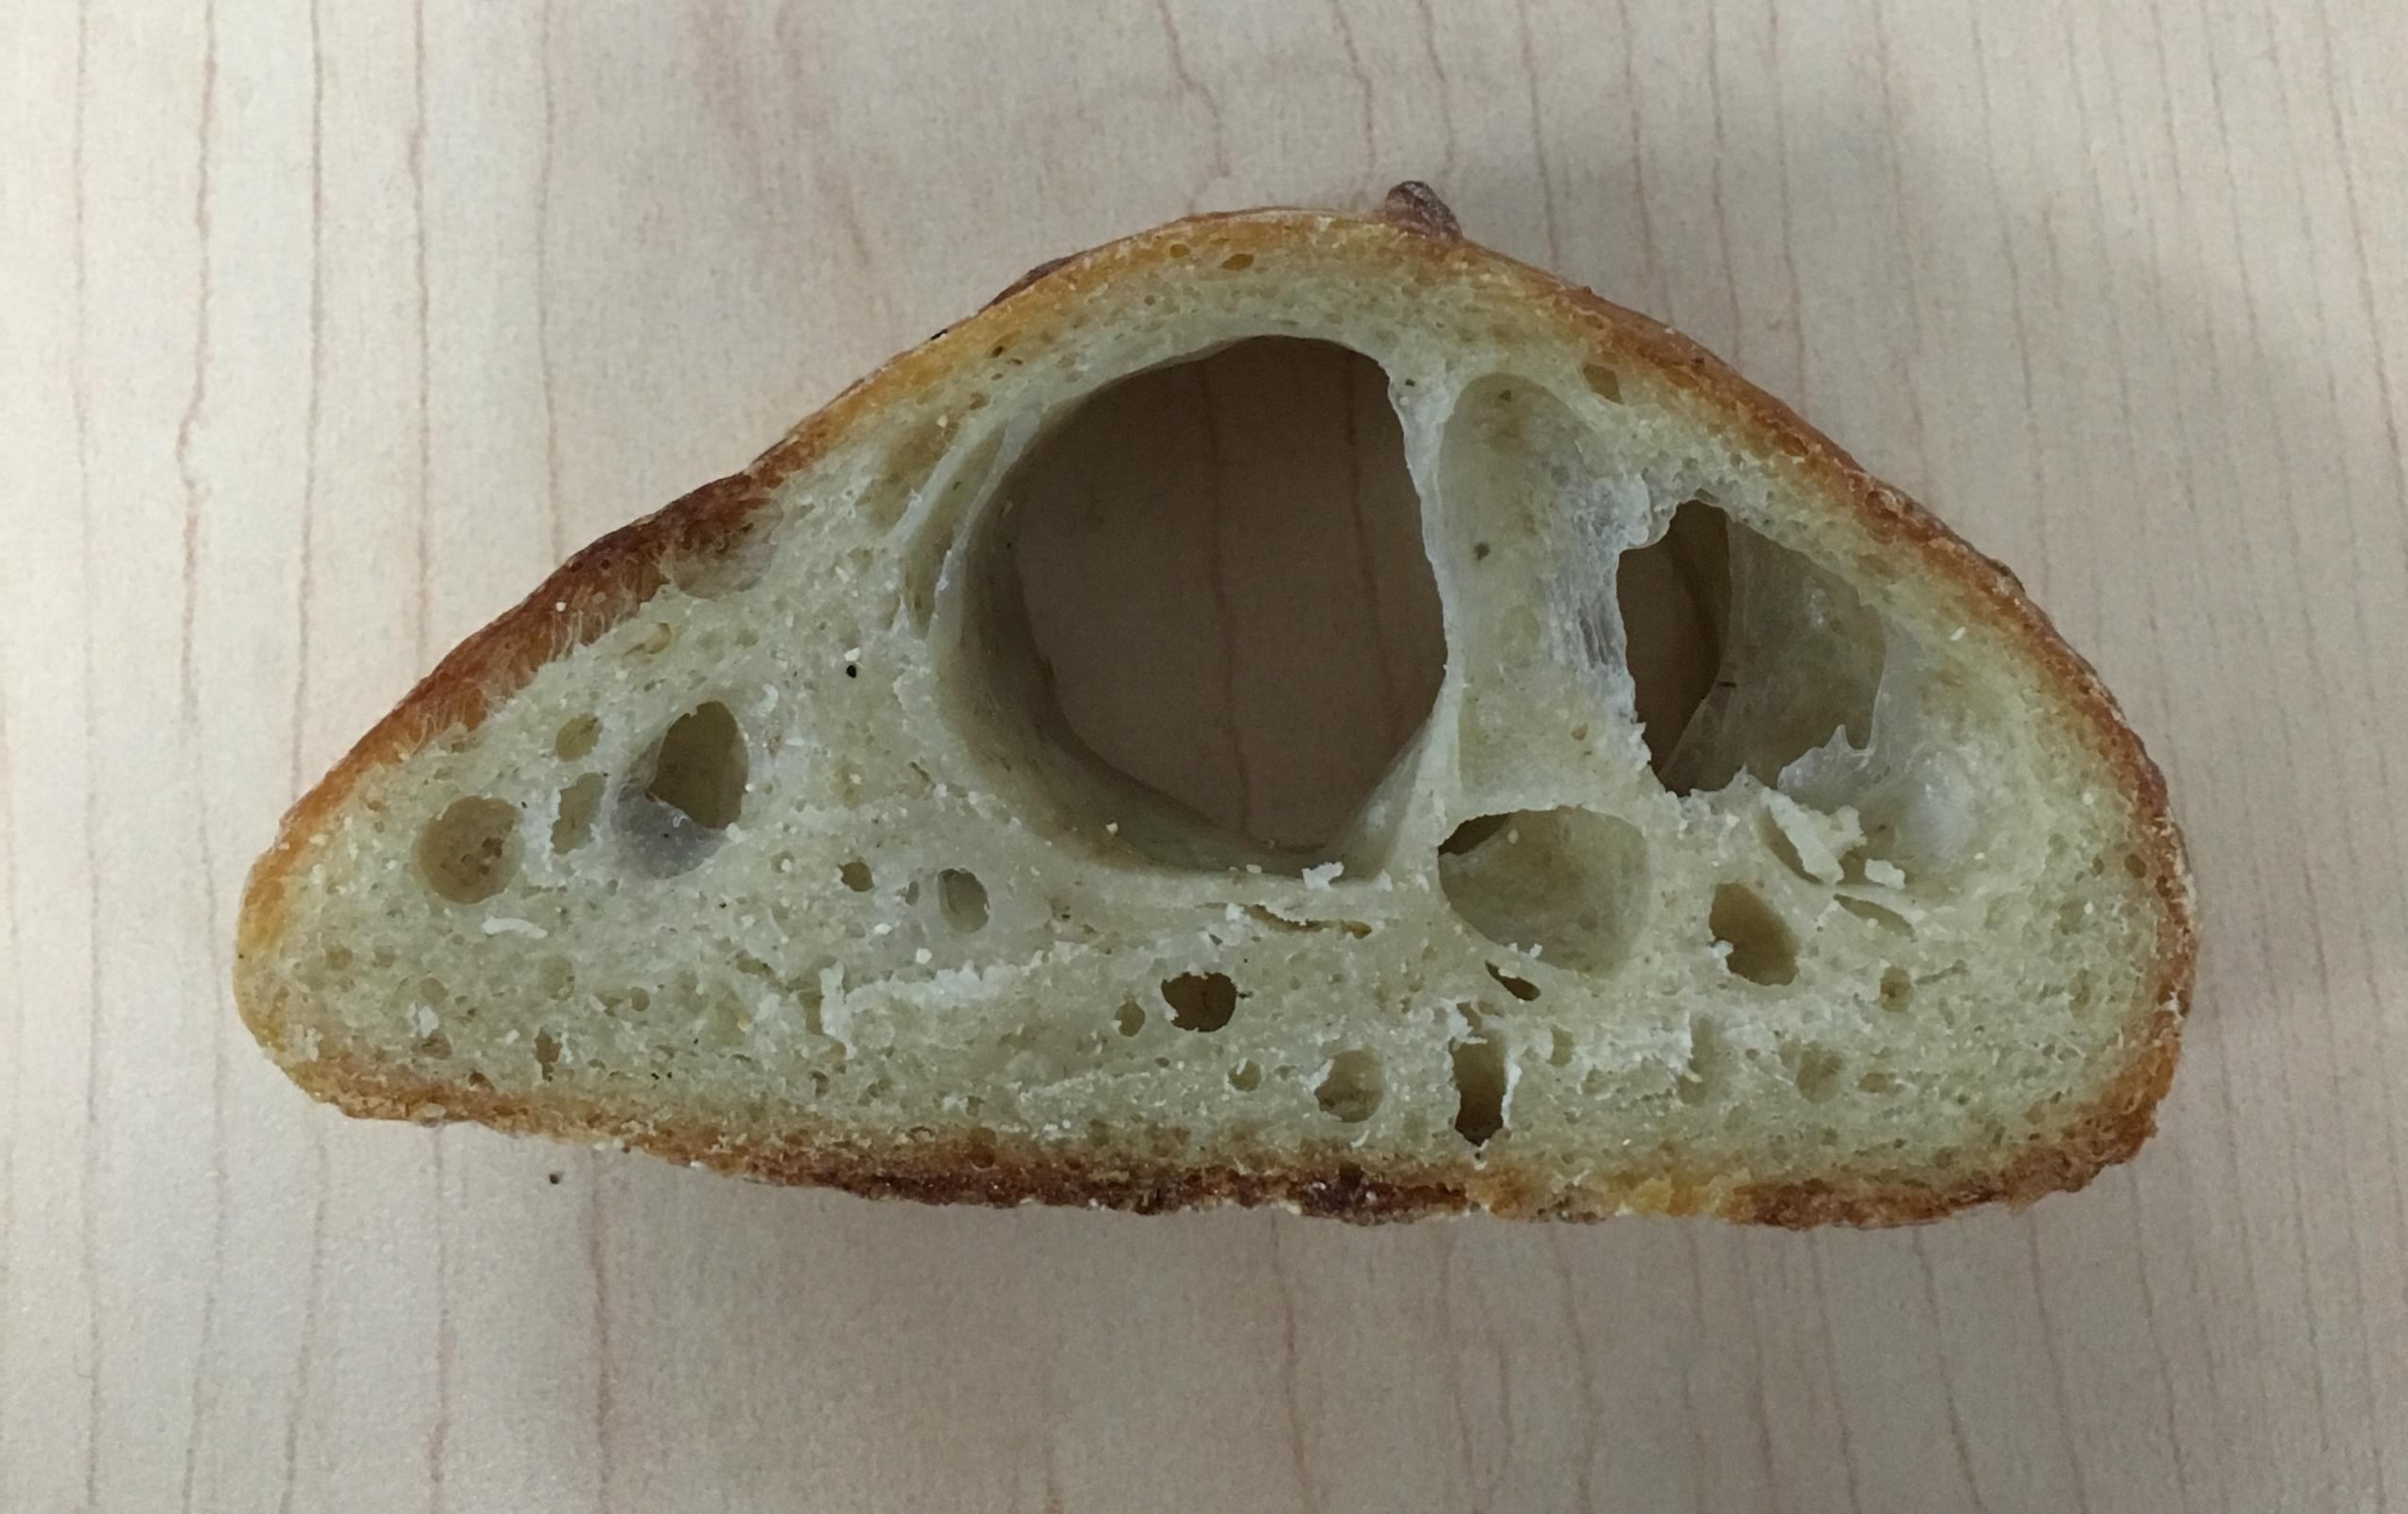 probleemoplossing voor ambachtelijk brood